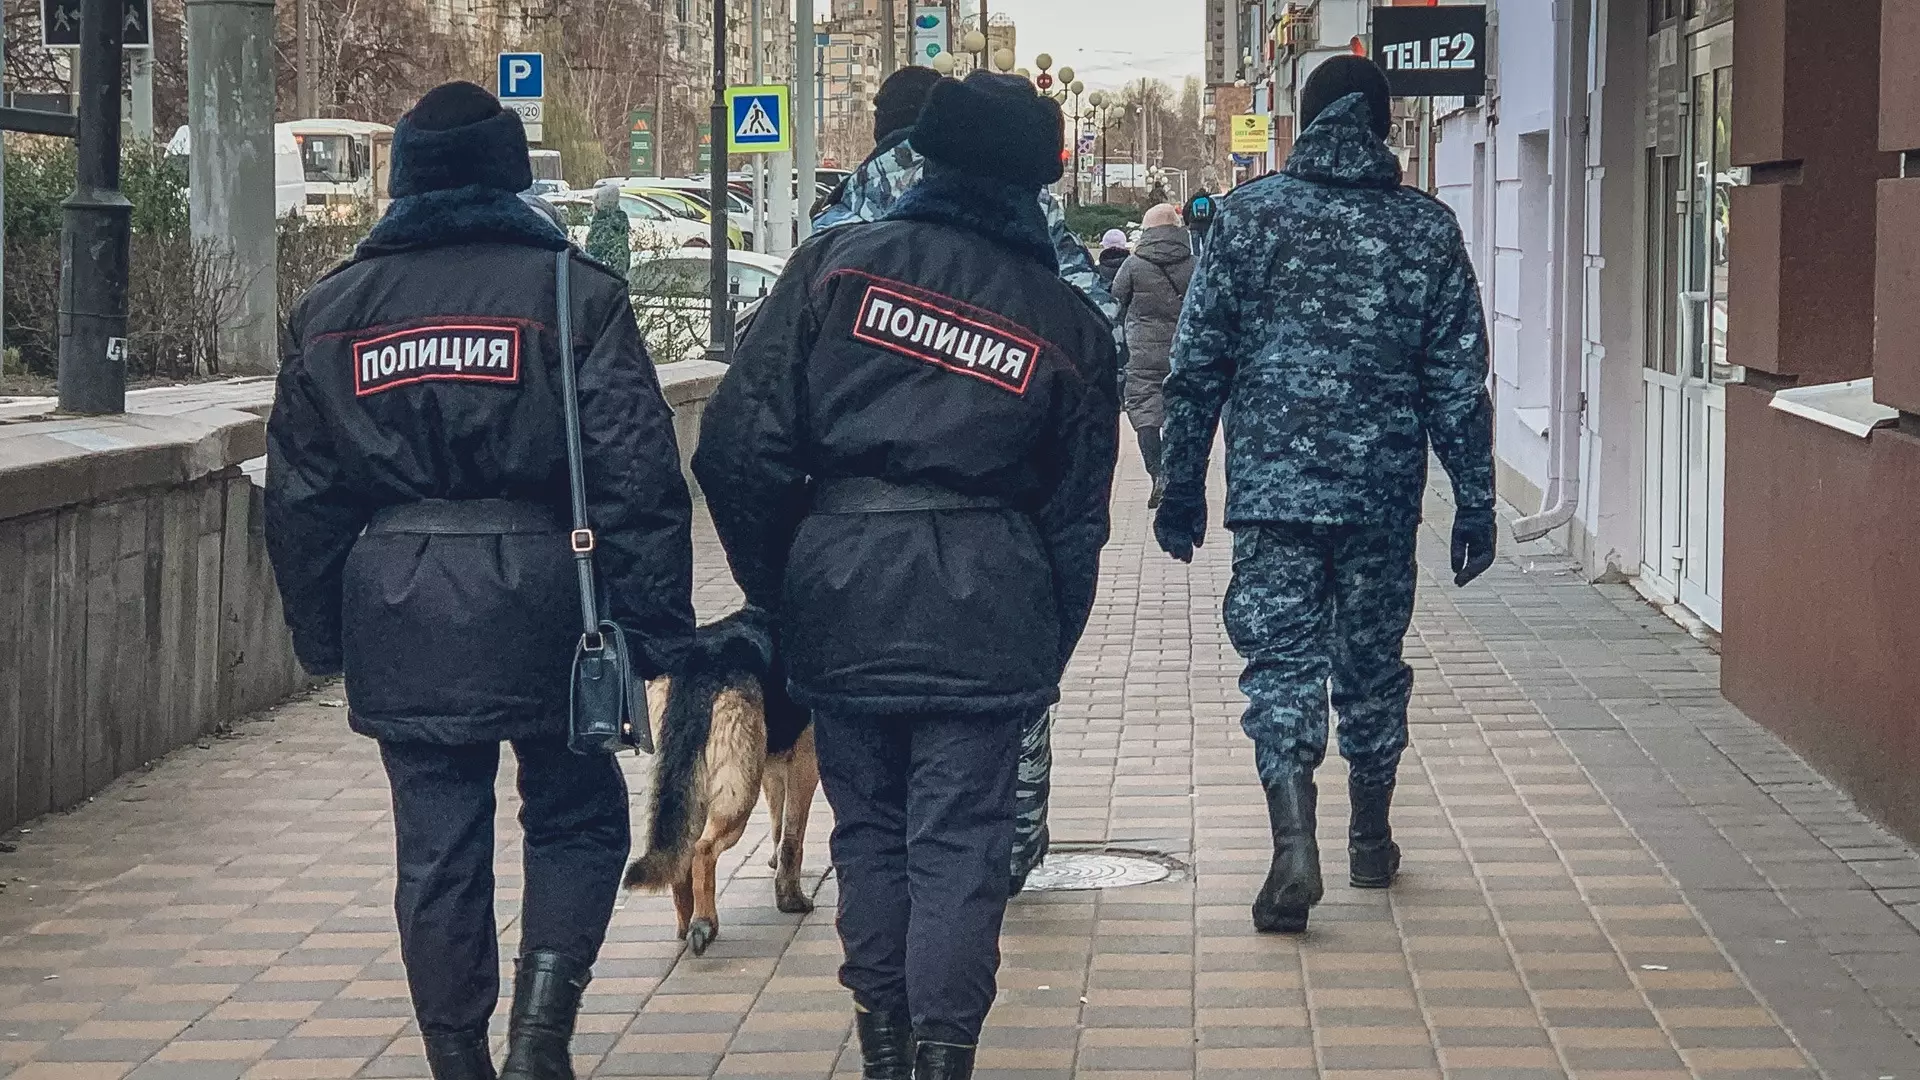 Полицейские раздавали листовки об аферистах посетителям метро в Екатеринбурге